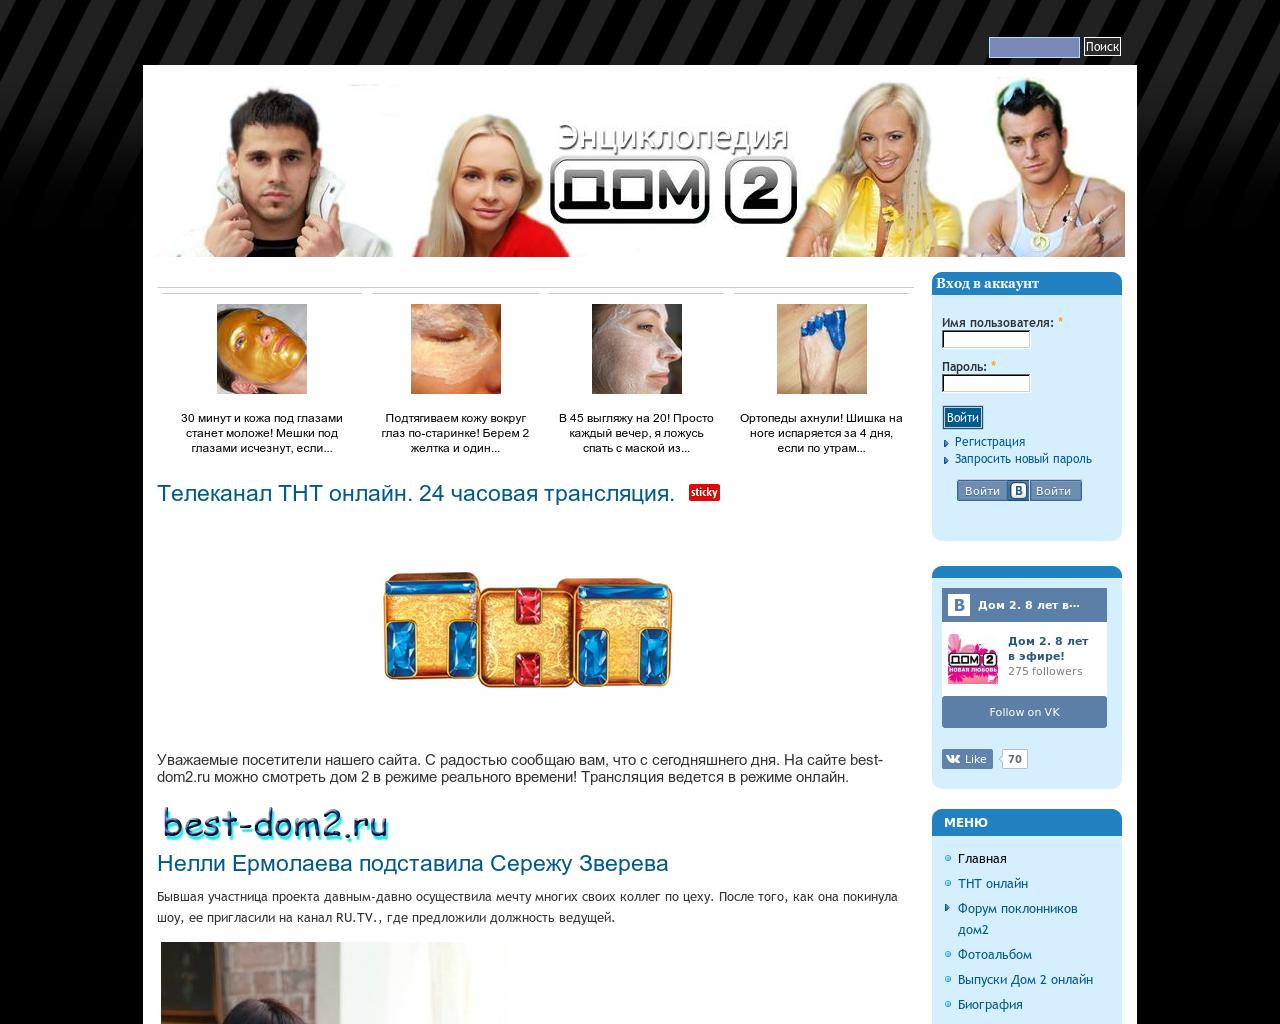 Изображение сайта best-dom2.ru в разрешении 1280x1024